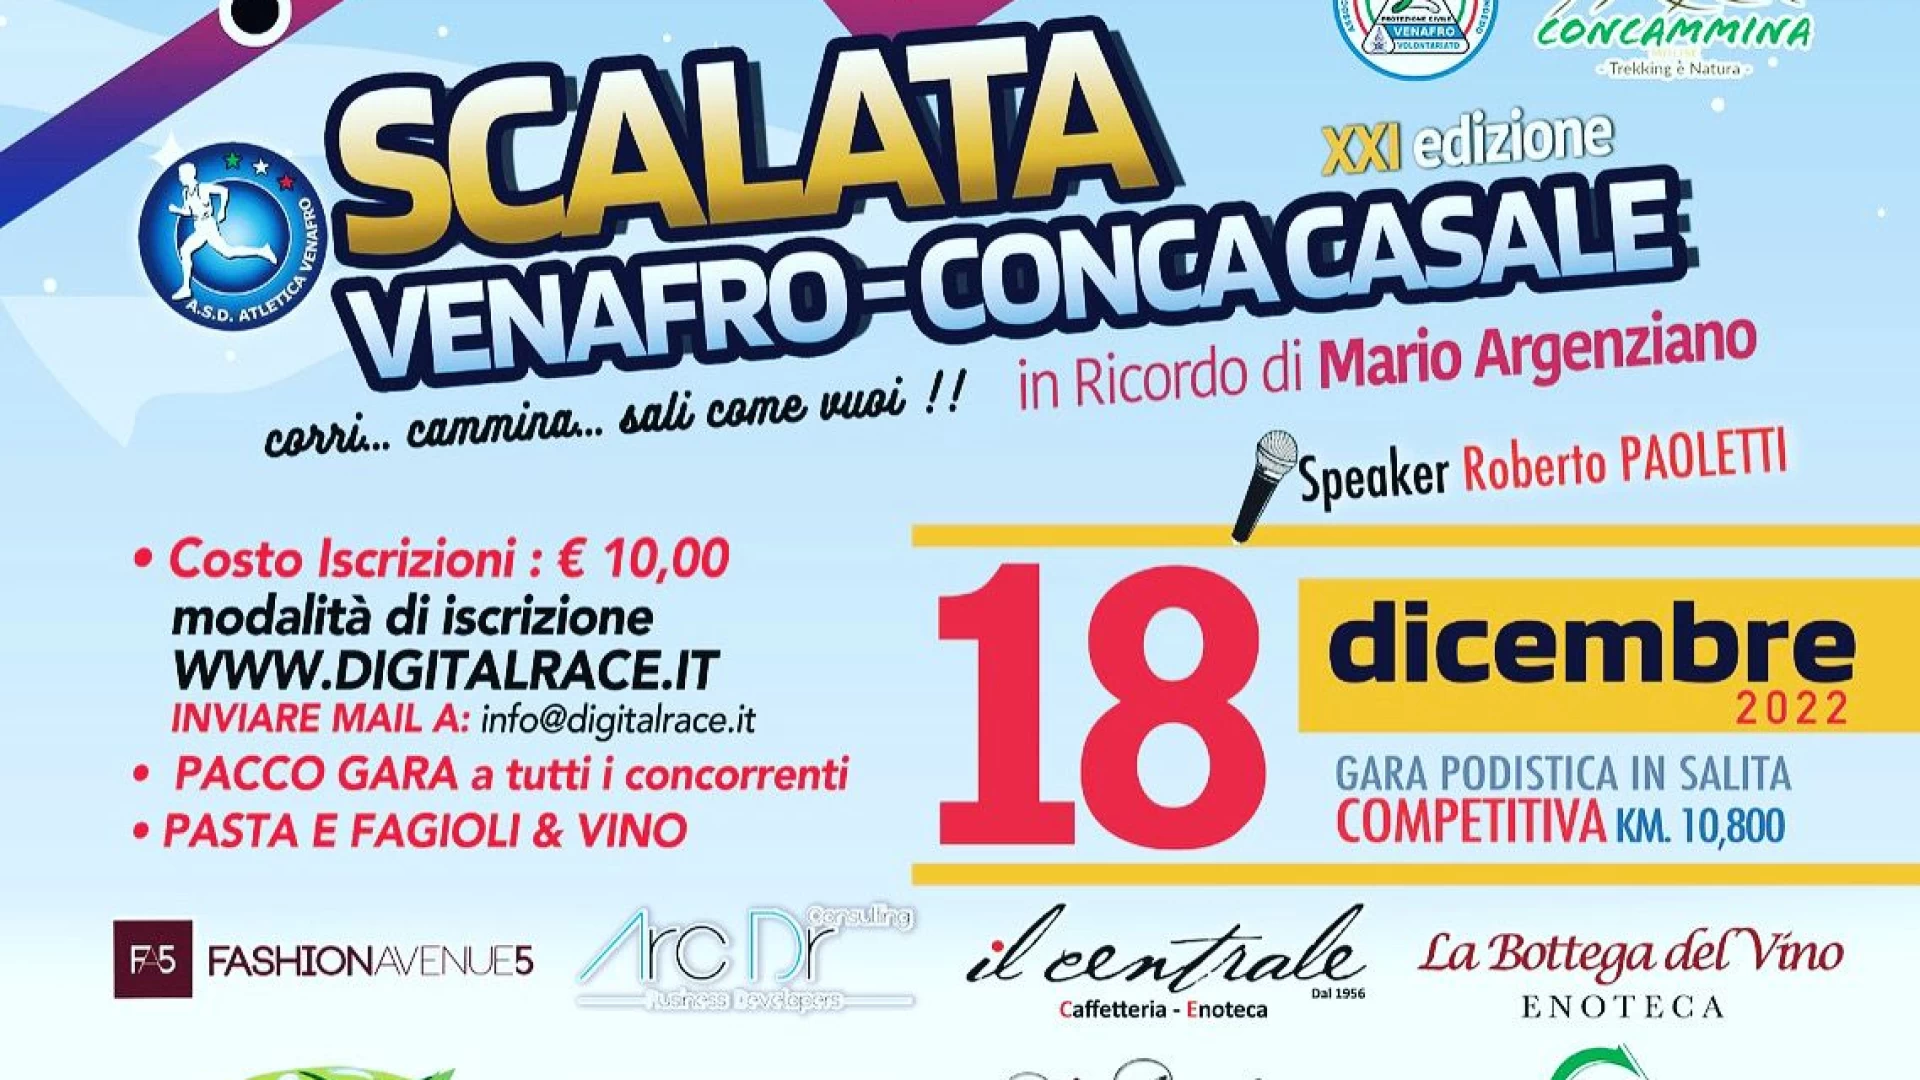 Domenica 18 dicembre l’edizione 2022 della Scalata Venafro-Conca Casale. La gara organizzata dall’Asd Atletica Venafro.